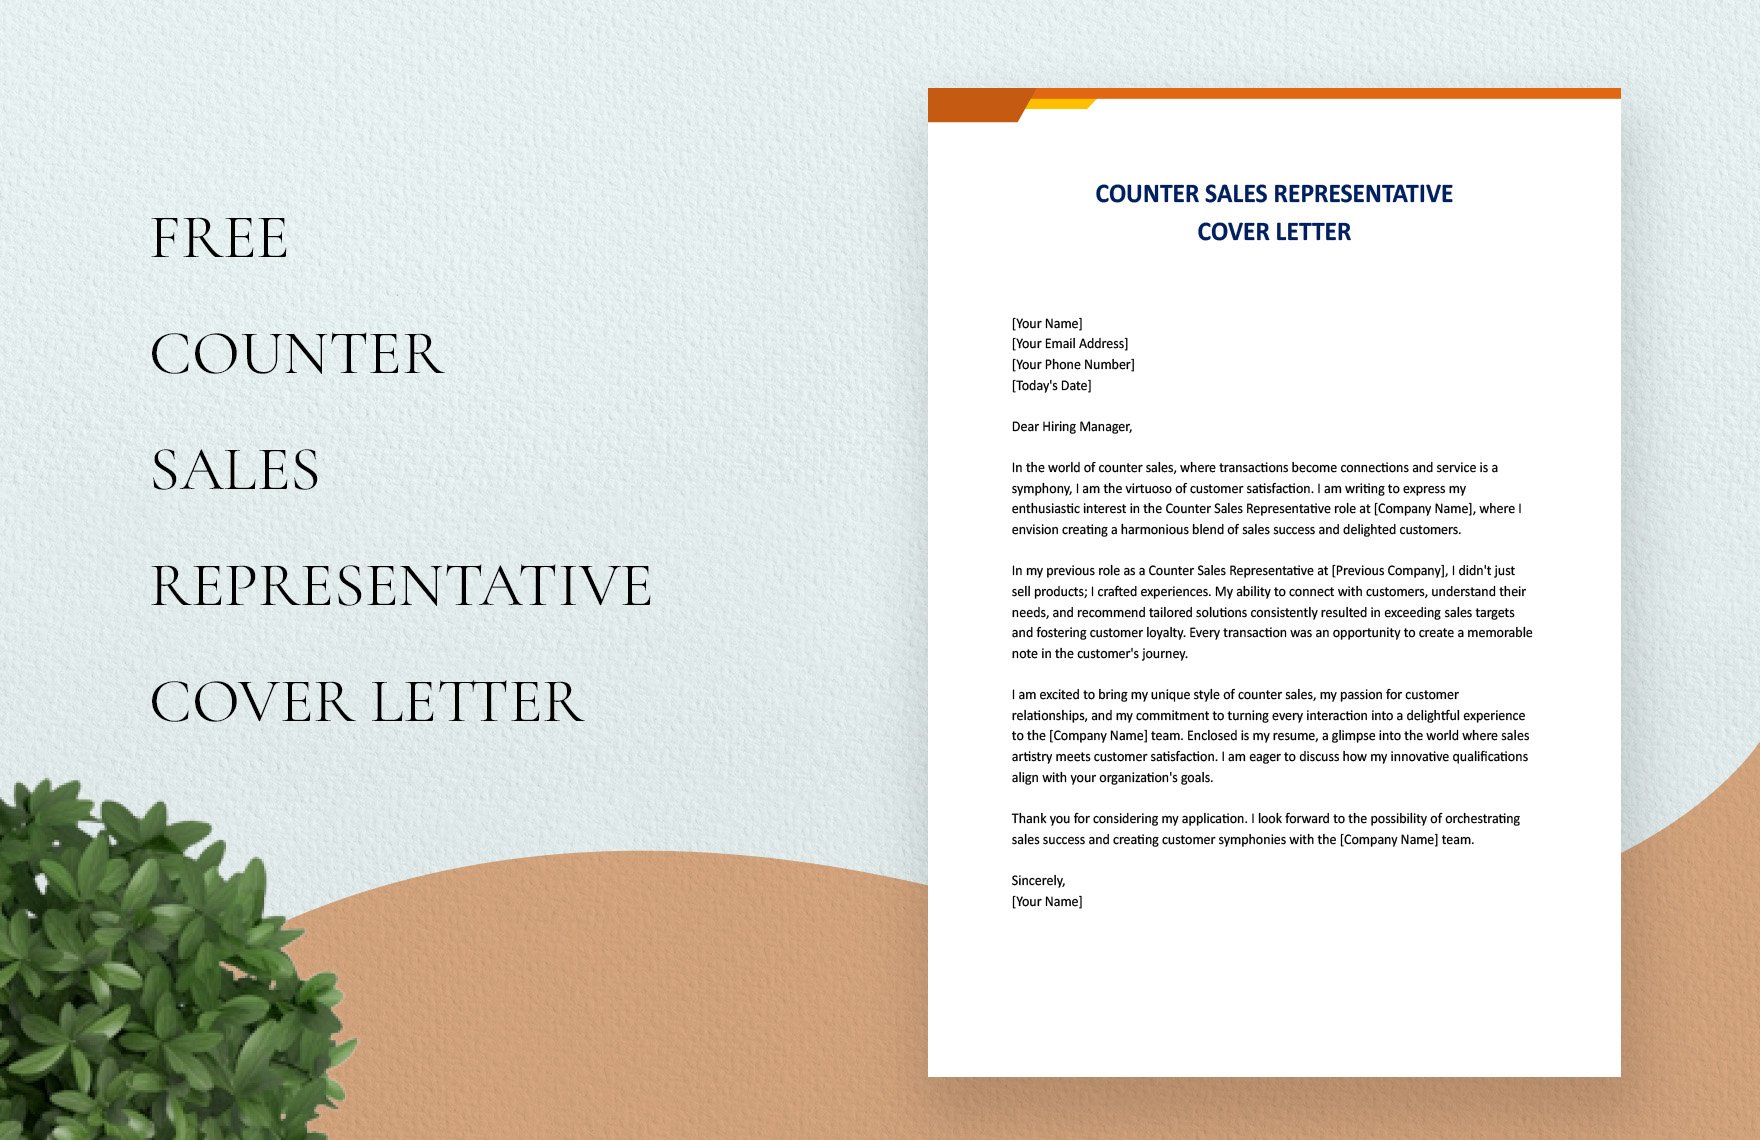 Counter Sales Representative Cover Letter